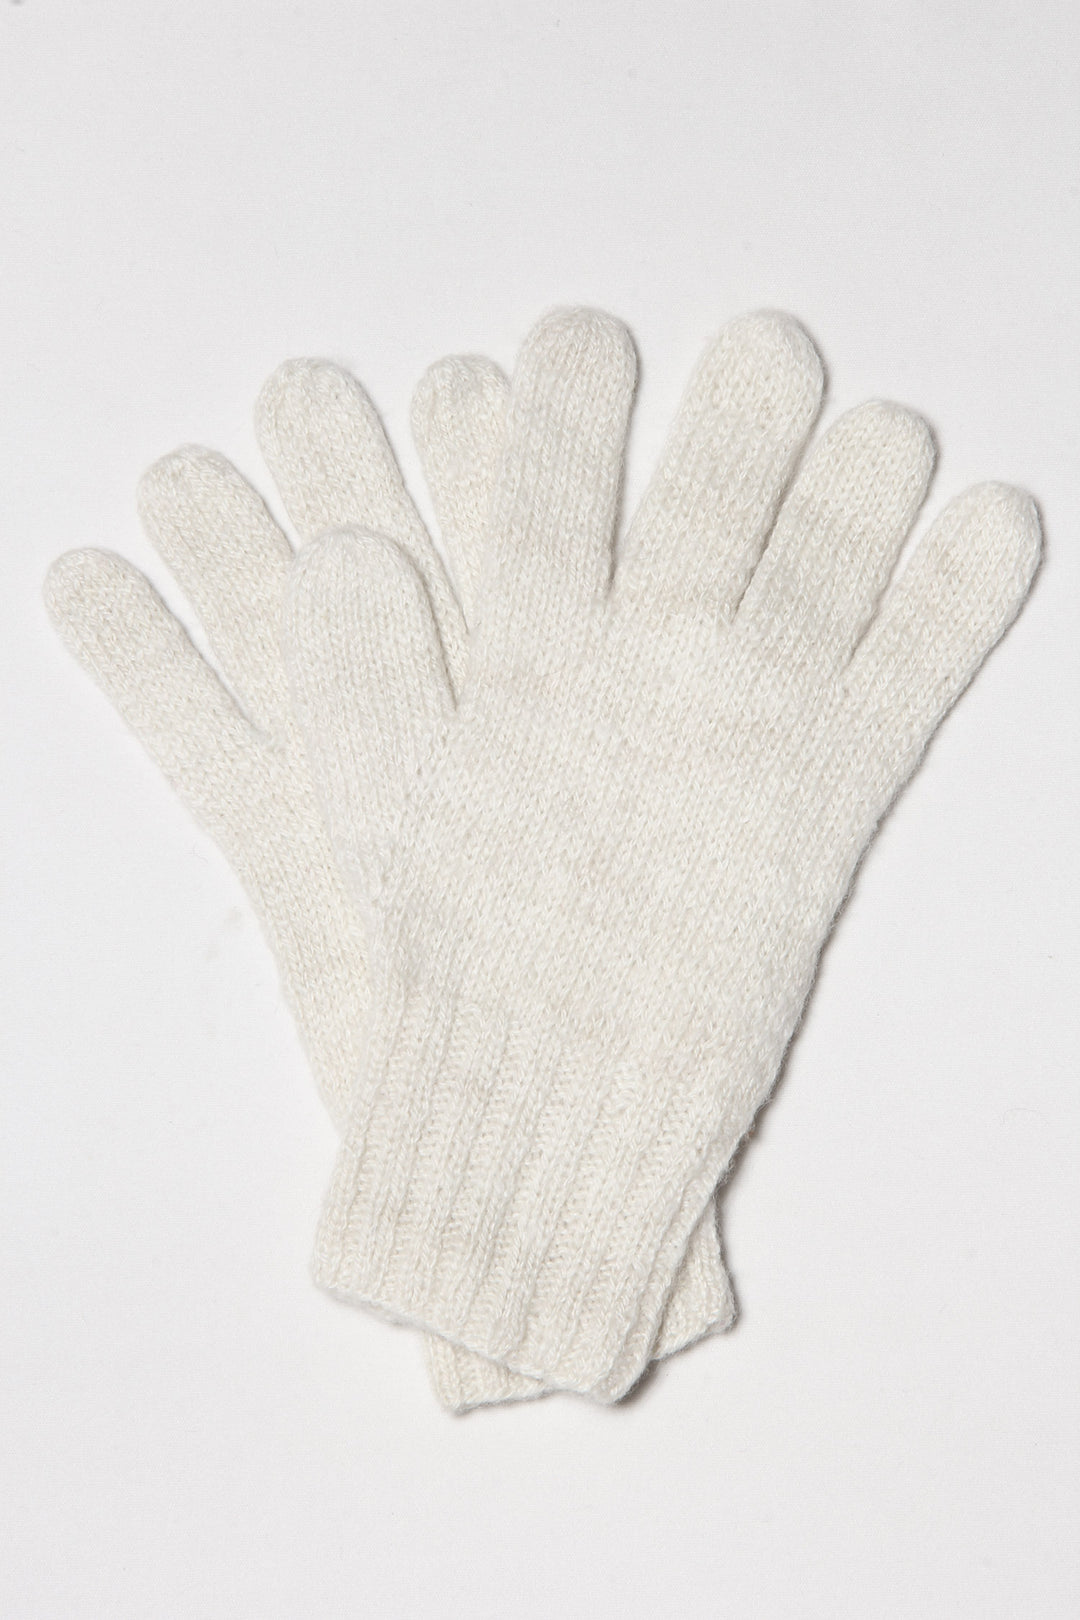 Handgemachte Alpaka Handschuhe in weißer Farbe